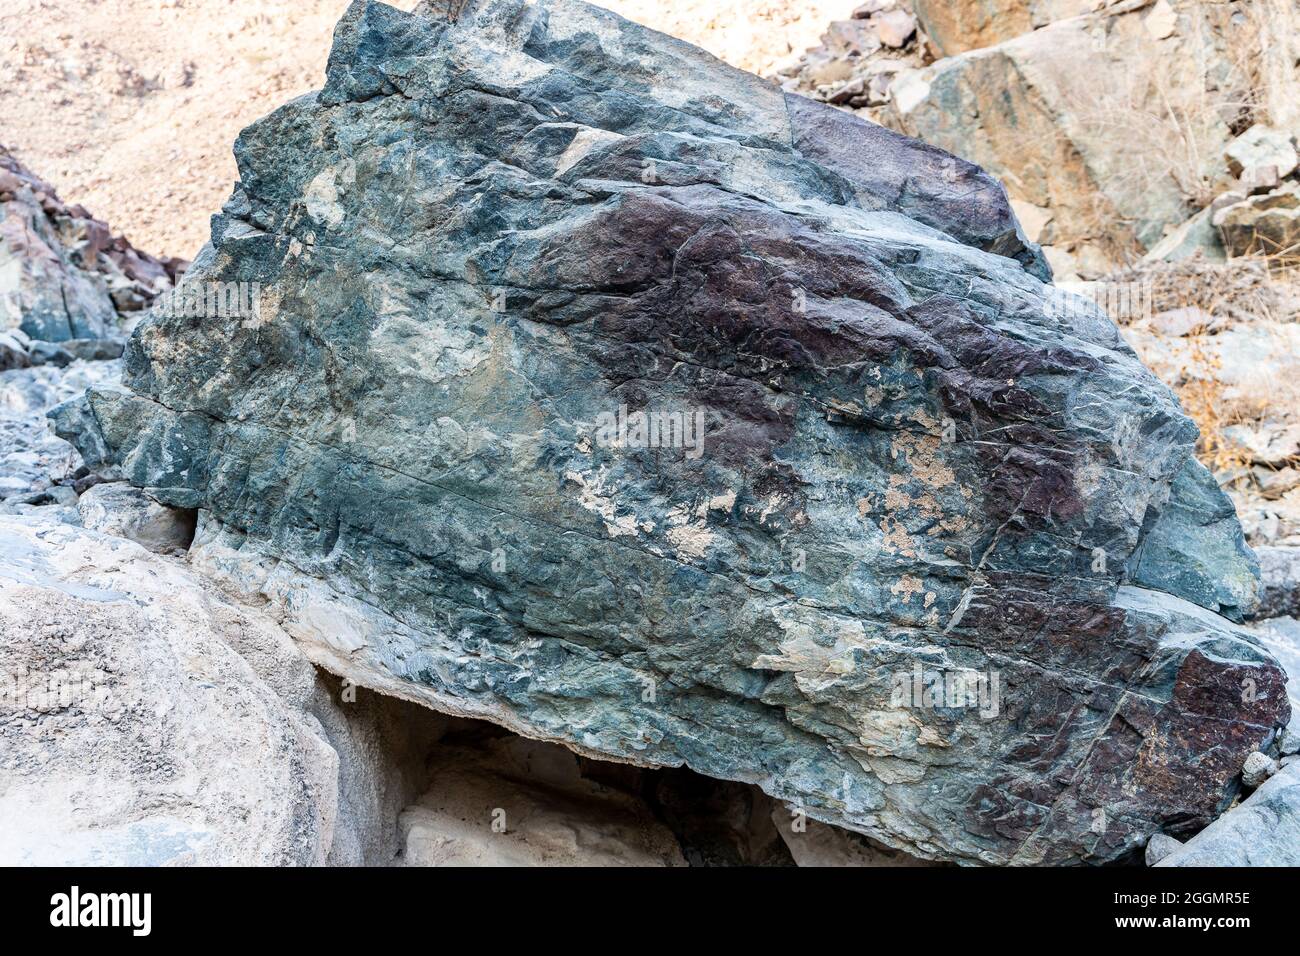 Minerai brut de cuivre, pierres vertes et roches contenant du cuivre dans l'ancienne zone minière, les montagnes Hajar, Émirats arabes Unis. Banque D'Images